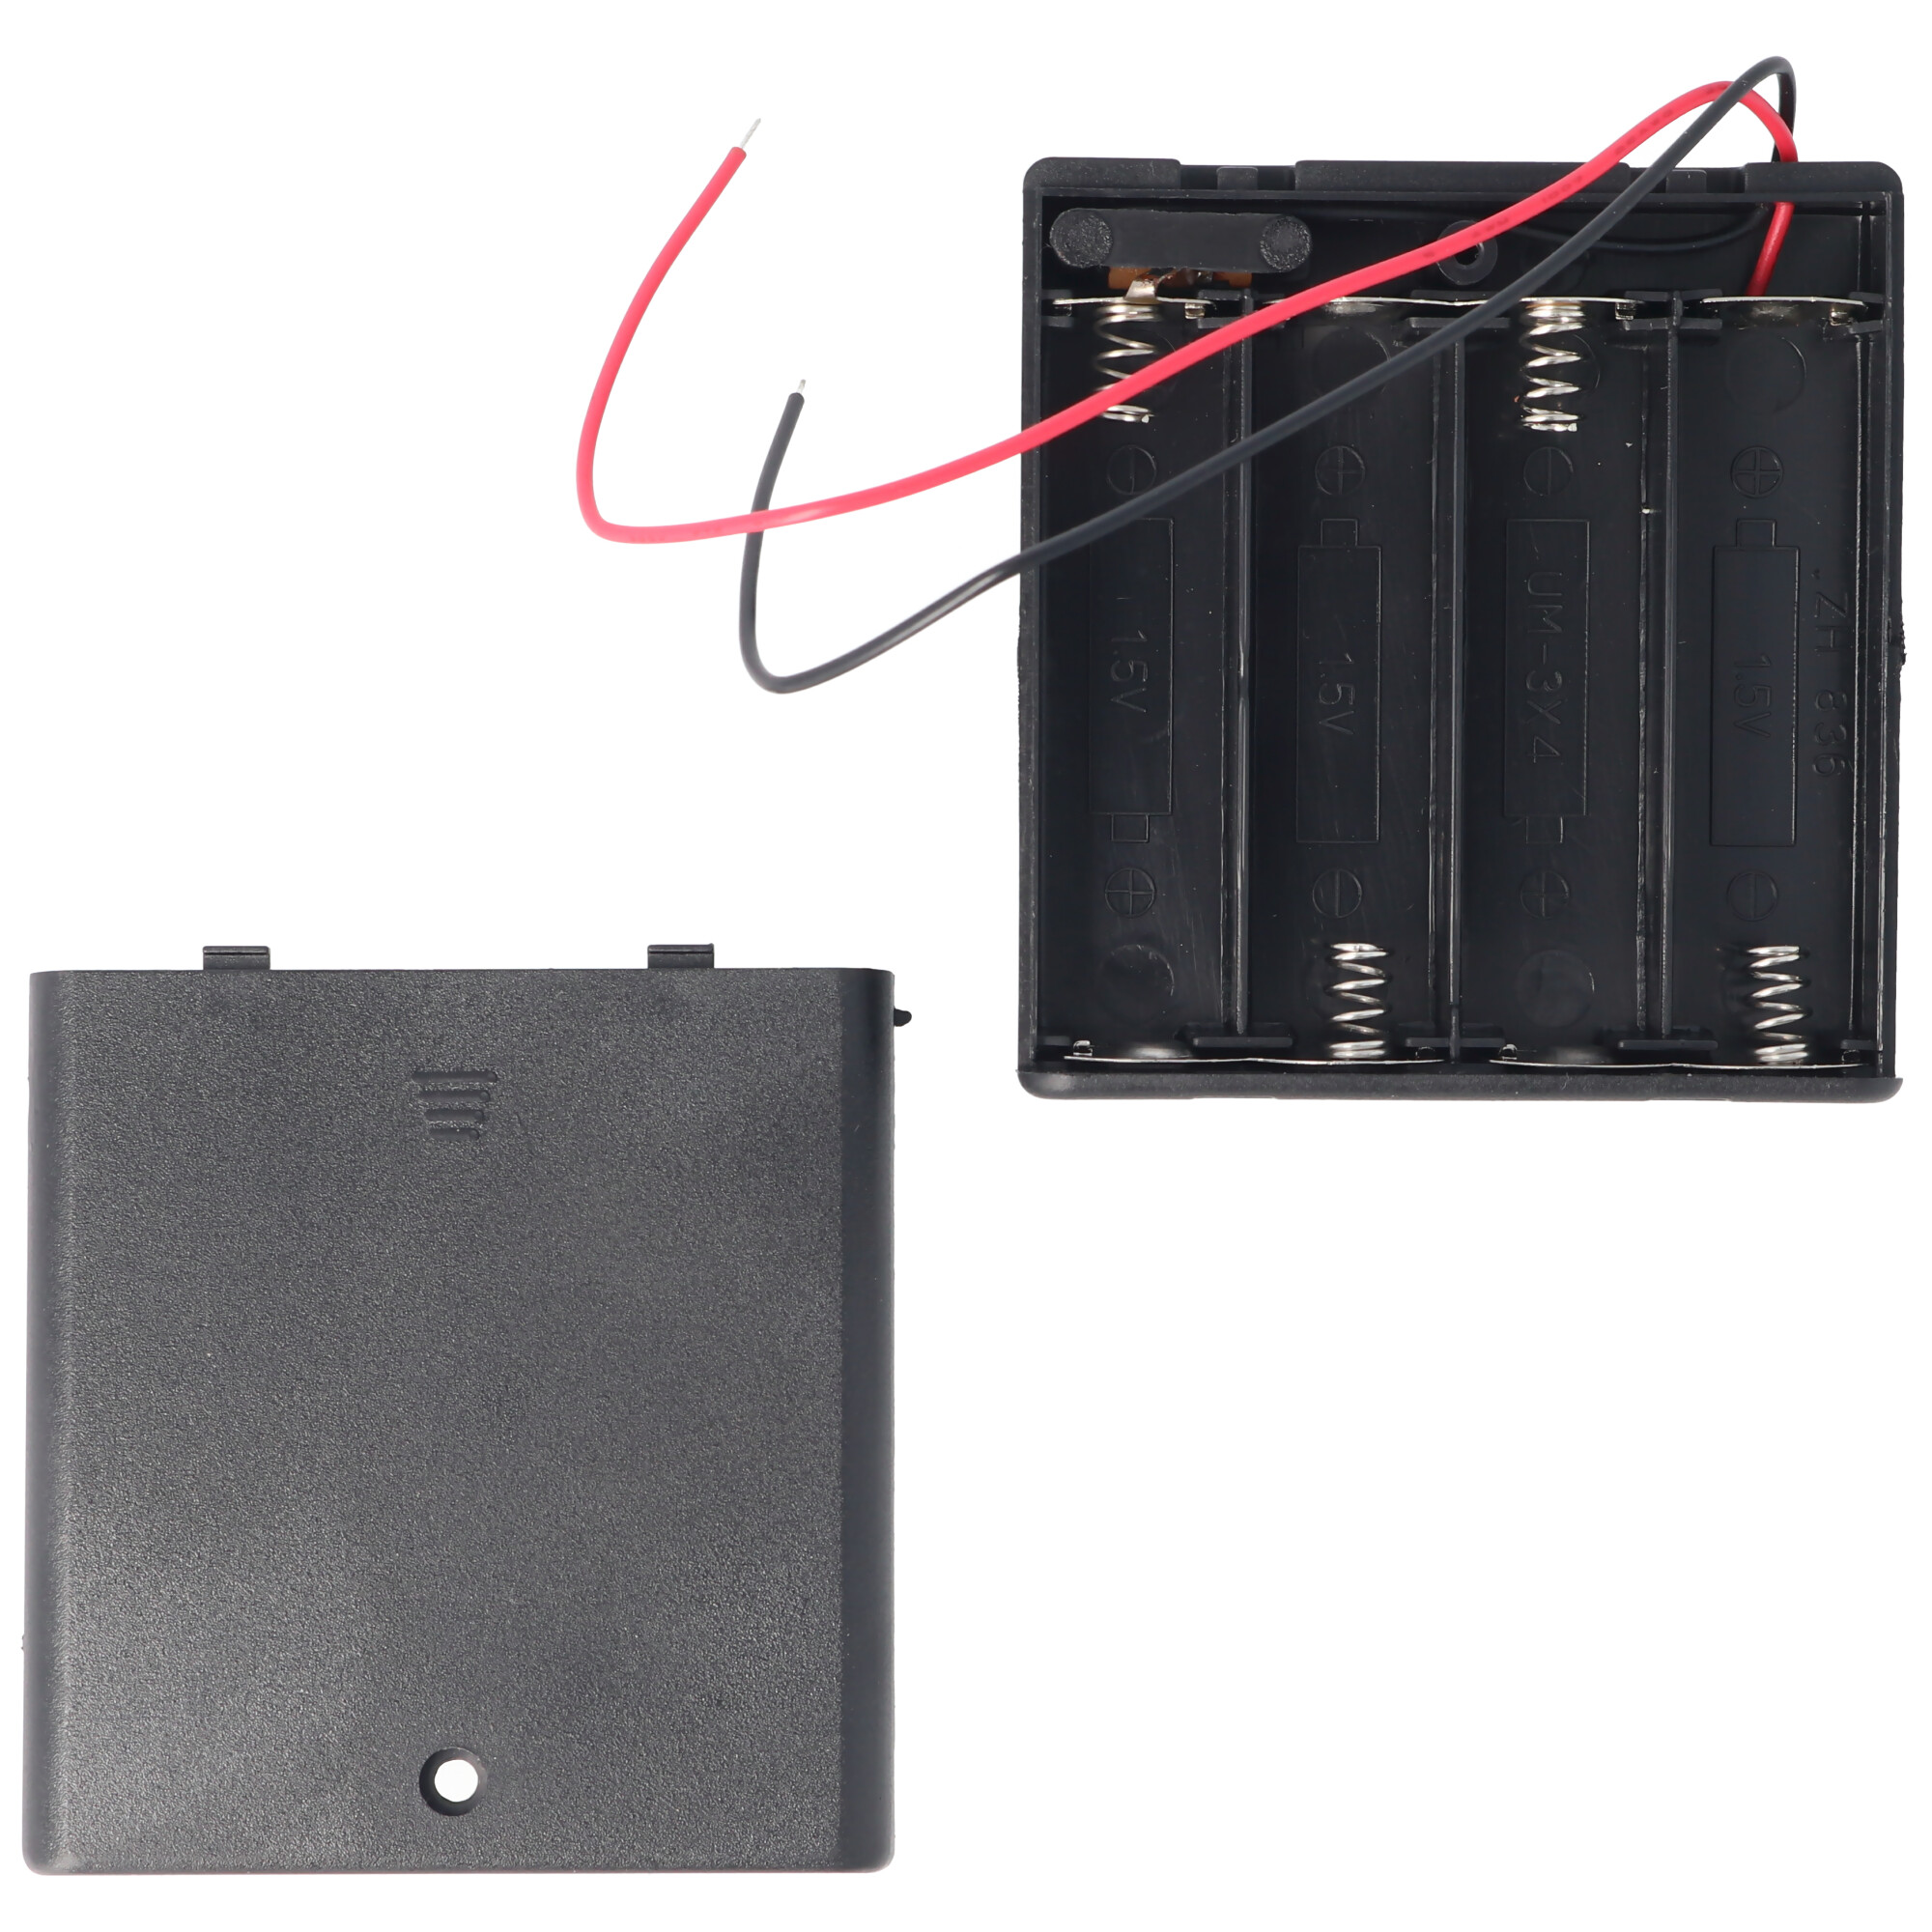 AccuCell Batteriehalter für 4 Stück Mignon AA HR-3, LR6 Batterien oder Akkus mit Deckel und Kabel